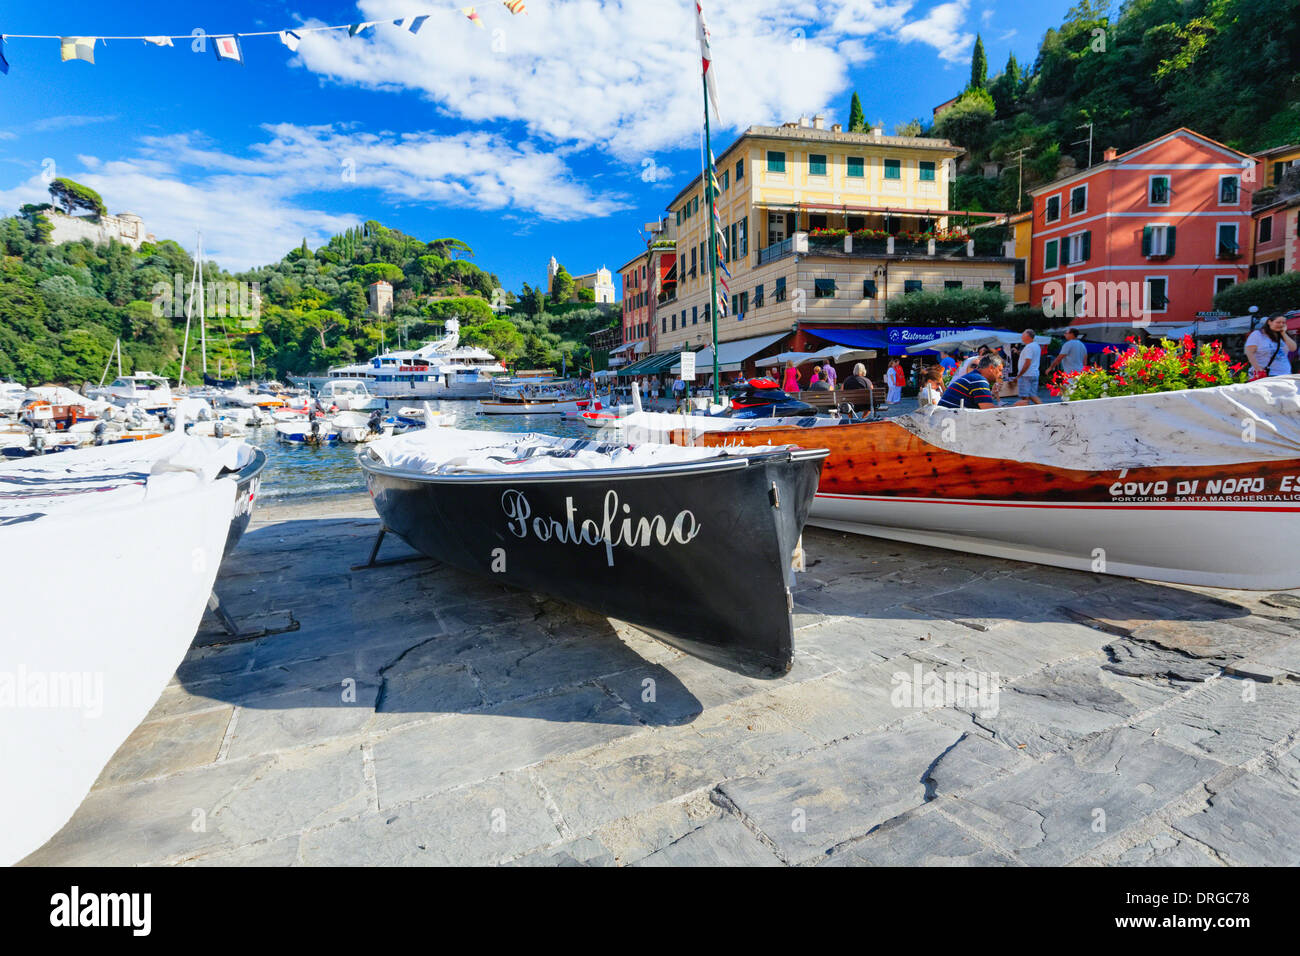 Low Angle View de bateaux dans un port, Portofino, ligurie, italie Banque D'Images